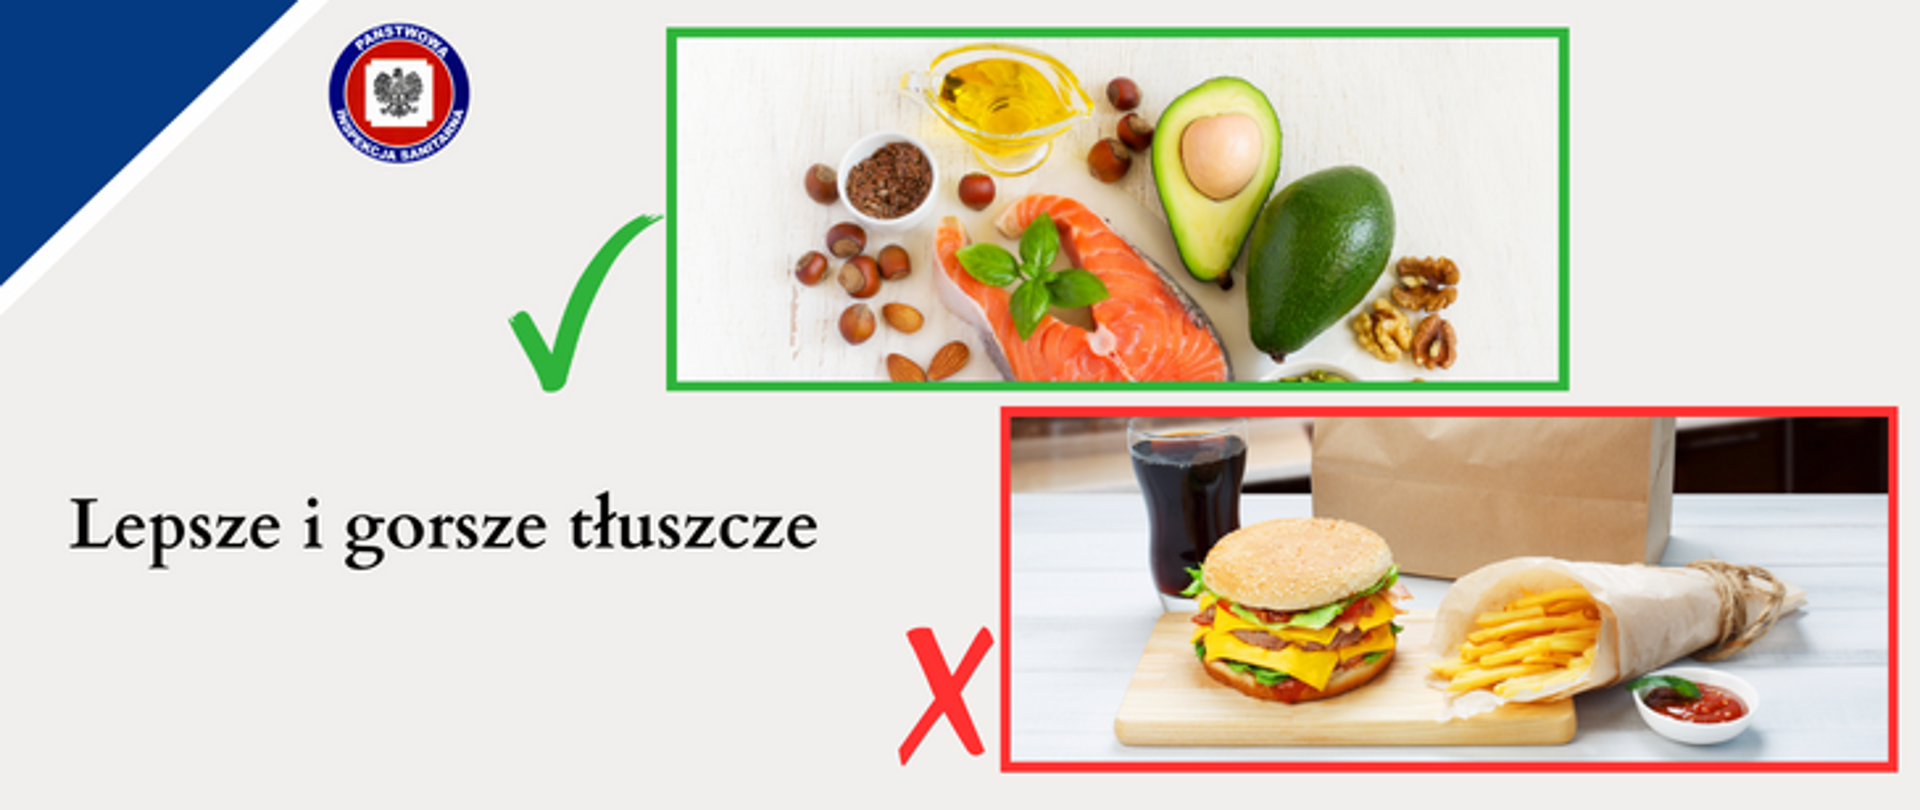 Na jasnoszarym tle na górze w zielonej ramce z zielonym znakiem "ok" po jej lewej stronie zdrowe produkty zawierające białka i tłuszcze, poniżej w czerwonej ramce z czerwonym znakiem X po jej lewej stronie produkty typu fastfood, W lewym górnym rogu logo Państwowej Inspekcji Sanitarnej.